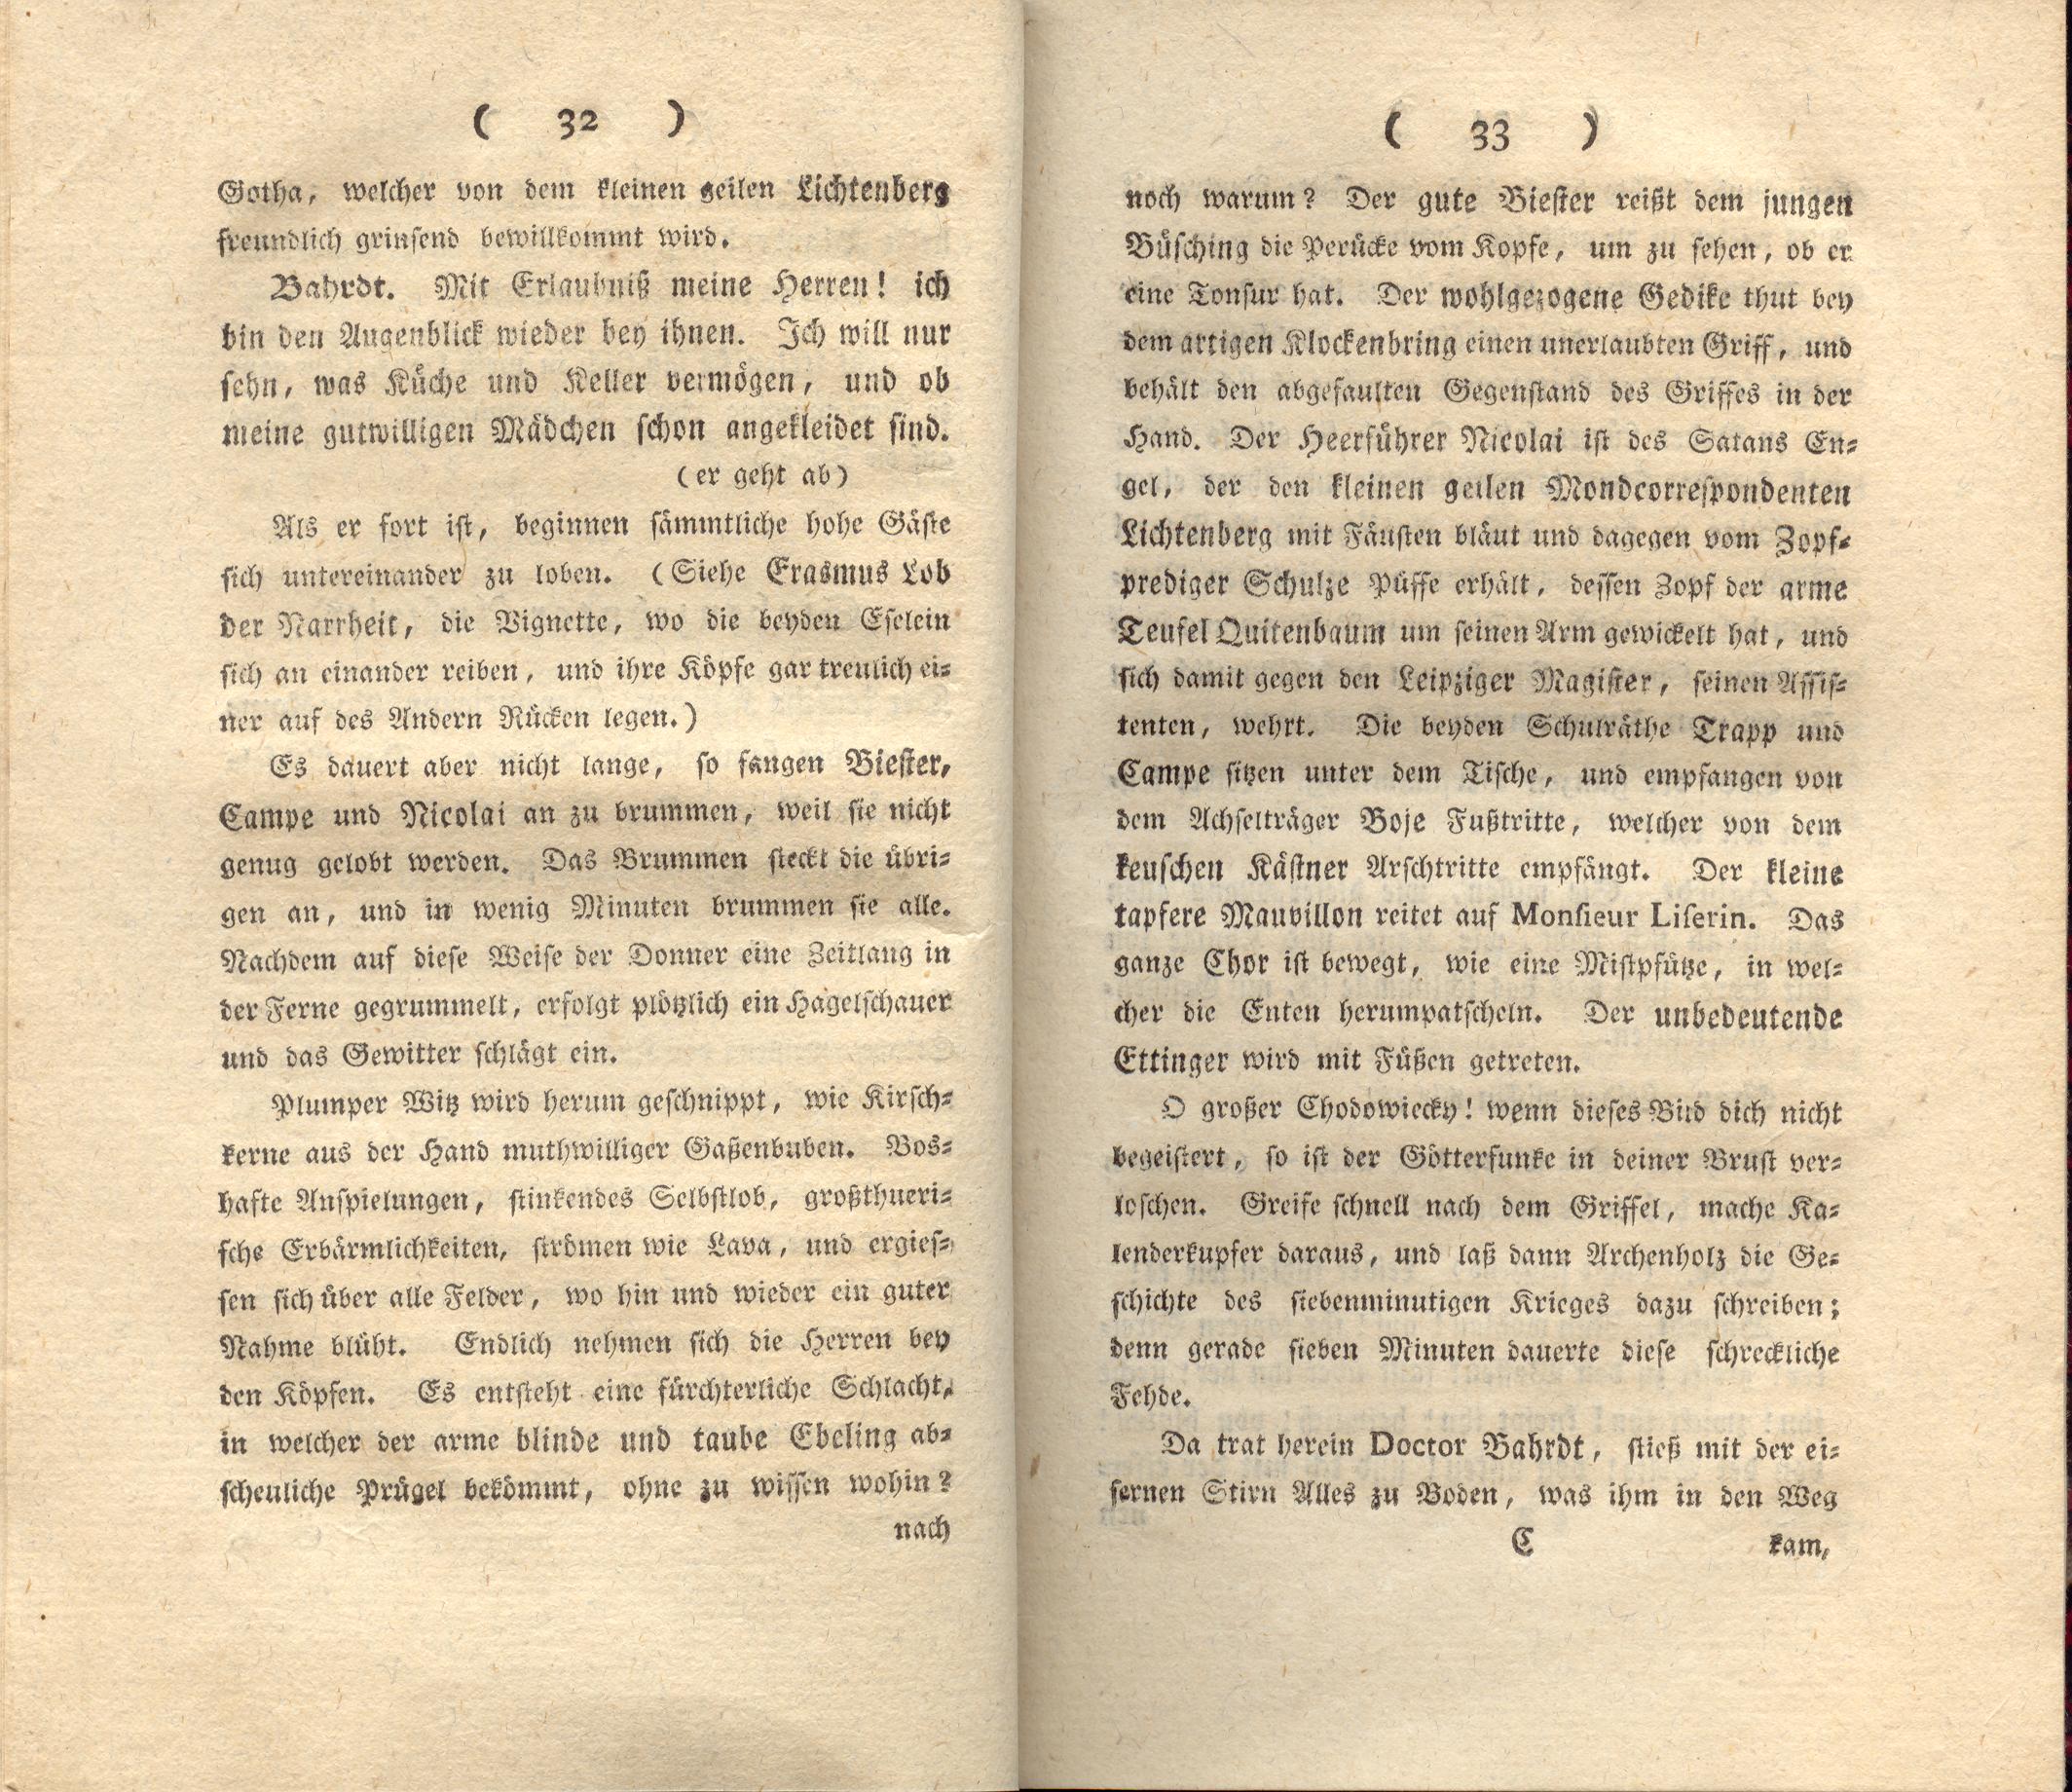 Doctor Bahrdt mit der eisernen Stirn (1790) | 18. (32-33) Основной текст